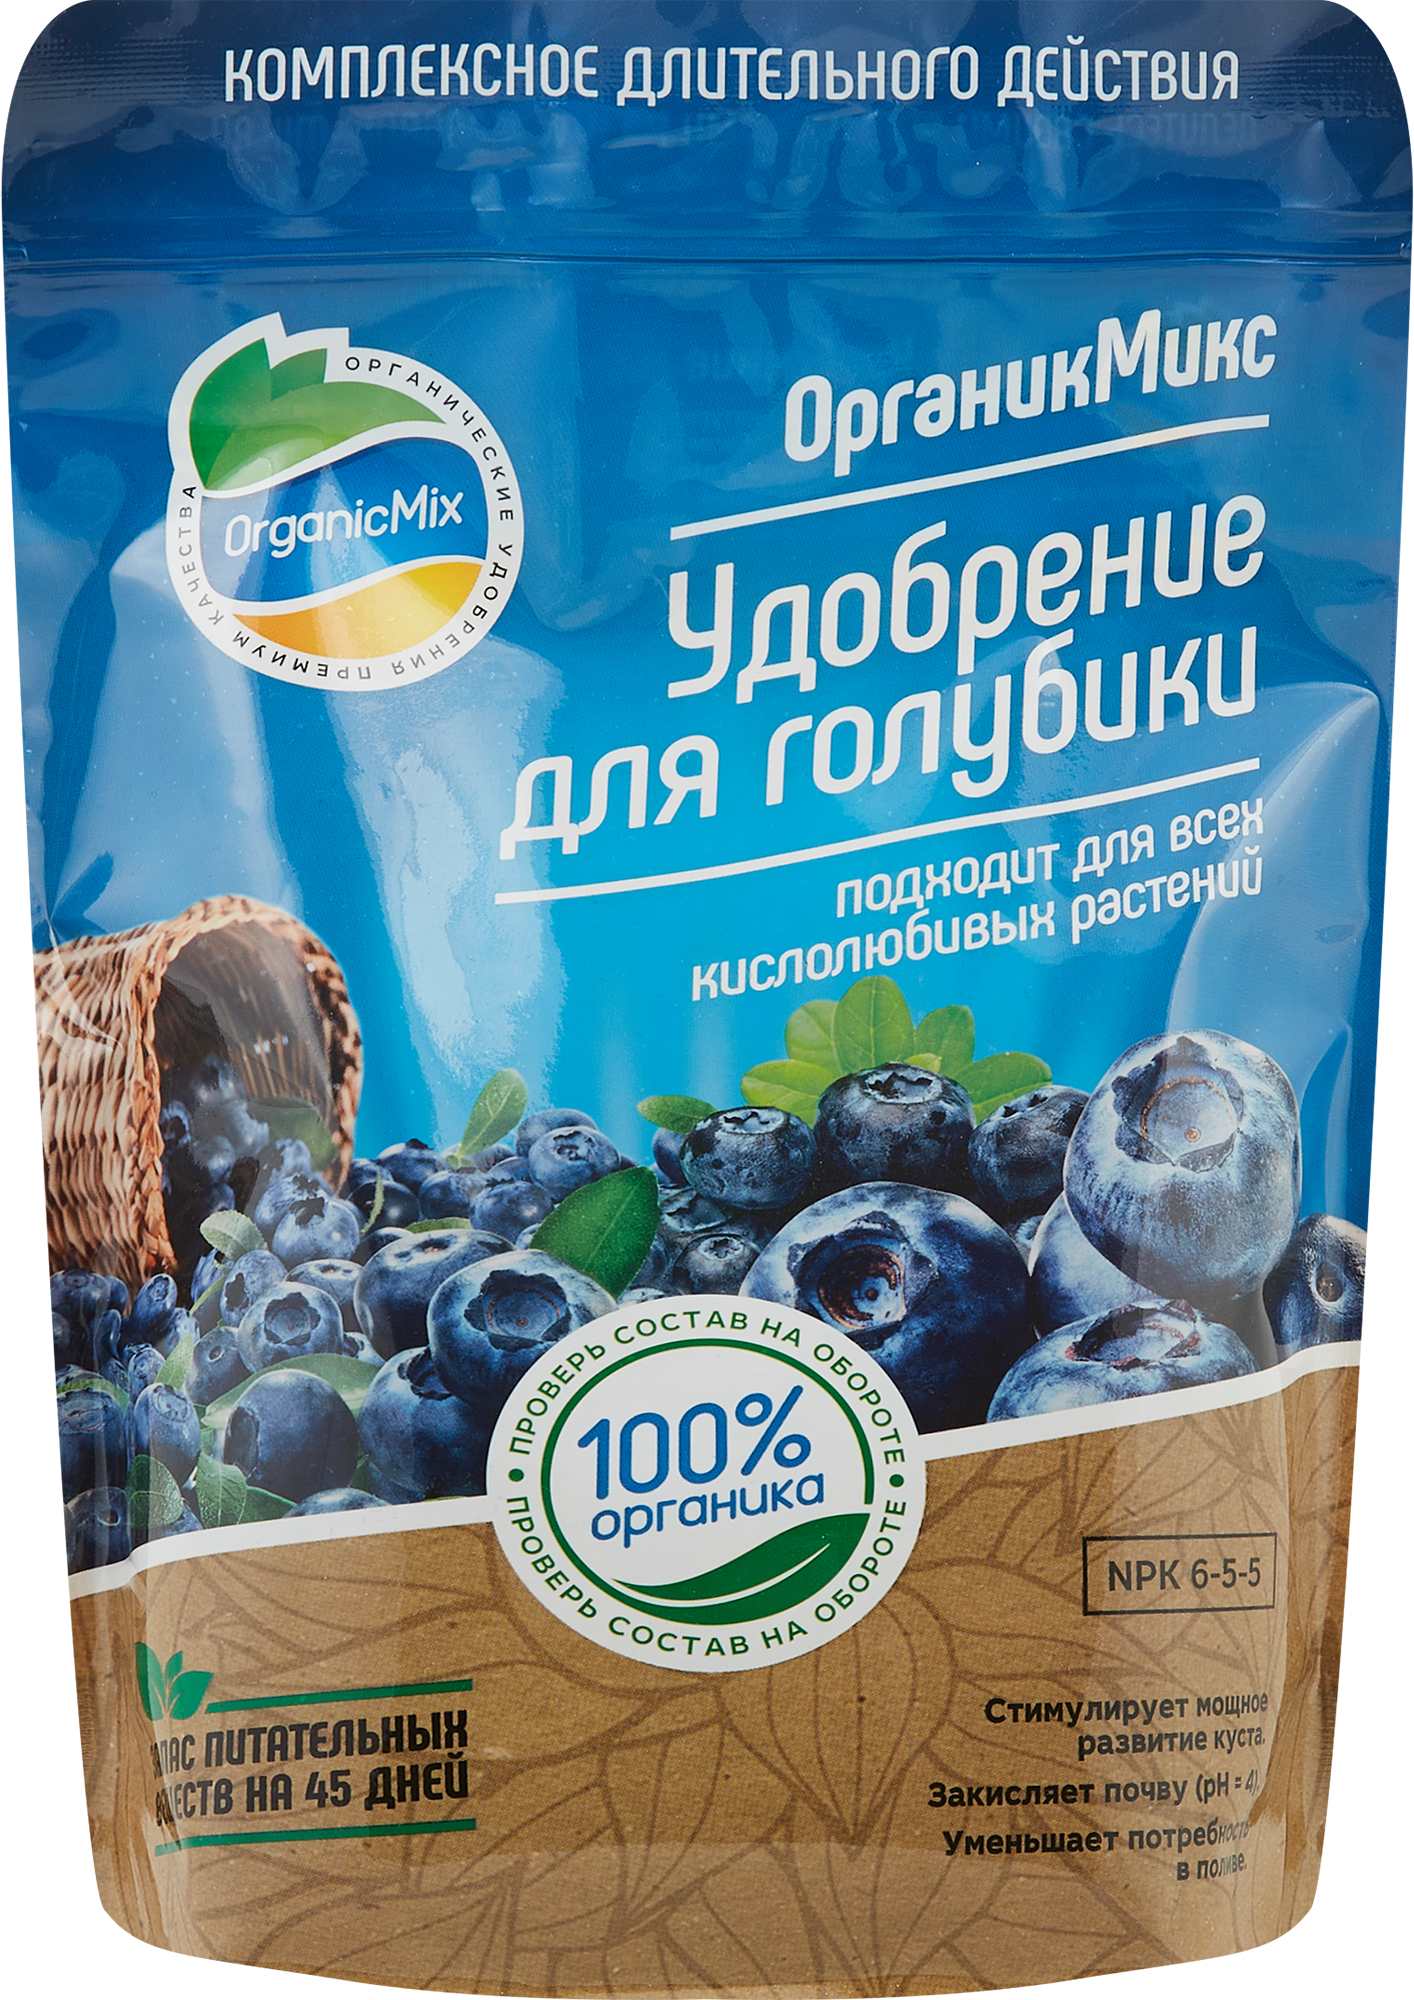 Органическое удобрение Органик Микс для голубики 850 г в Новороссийске –купить по низкой цене в интернет-магазине Леруа Мерлен